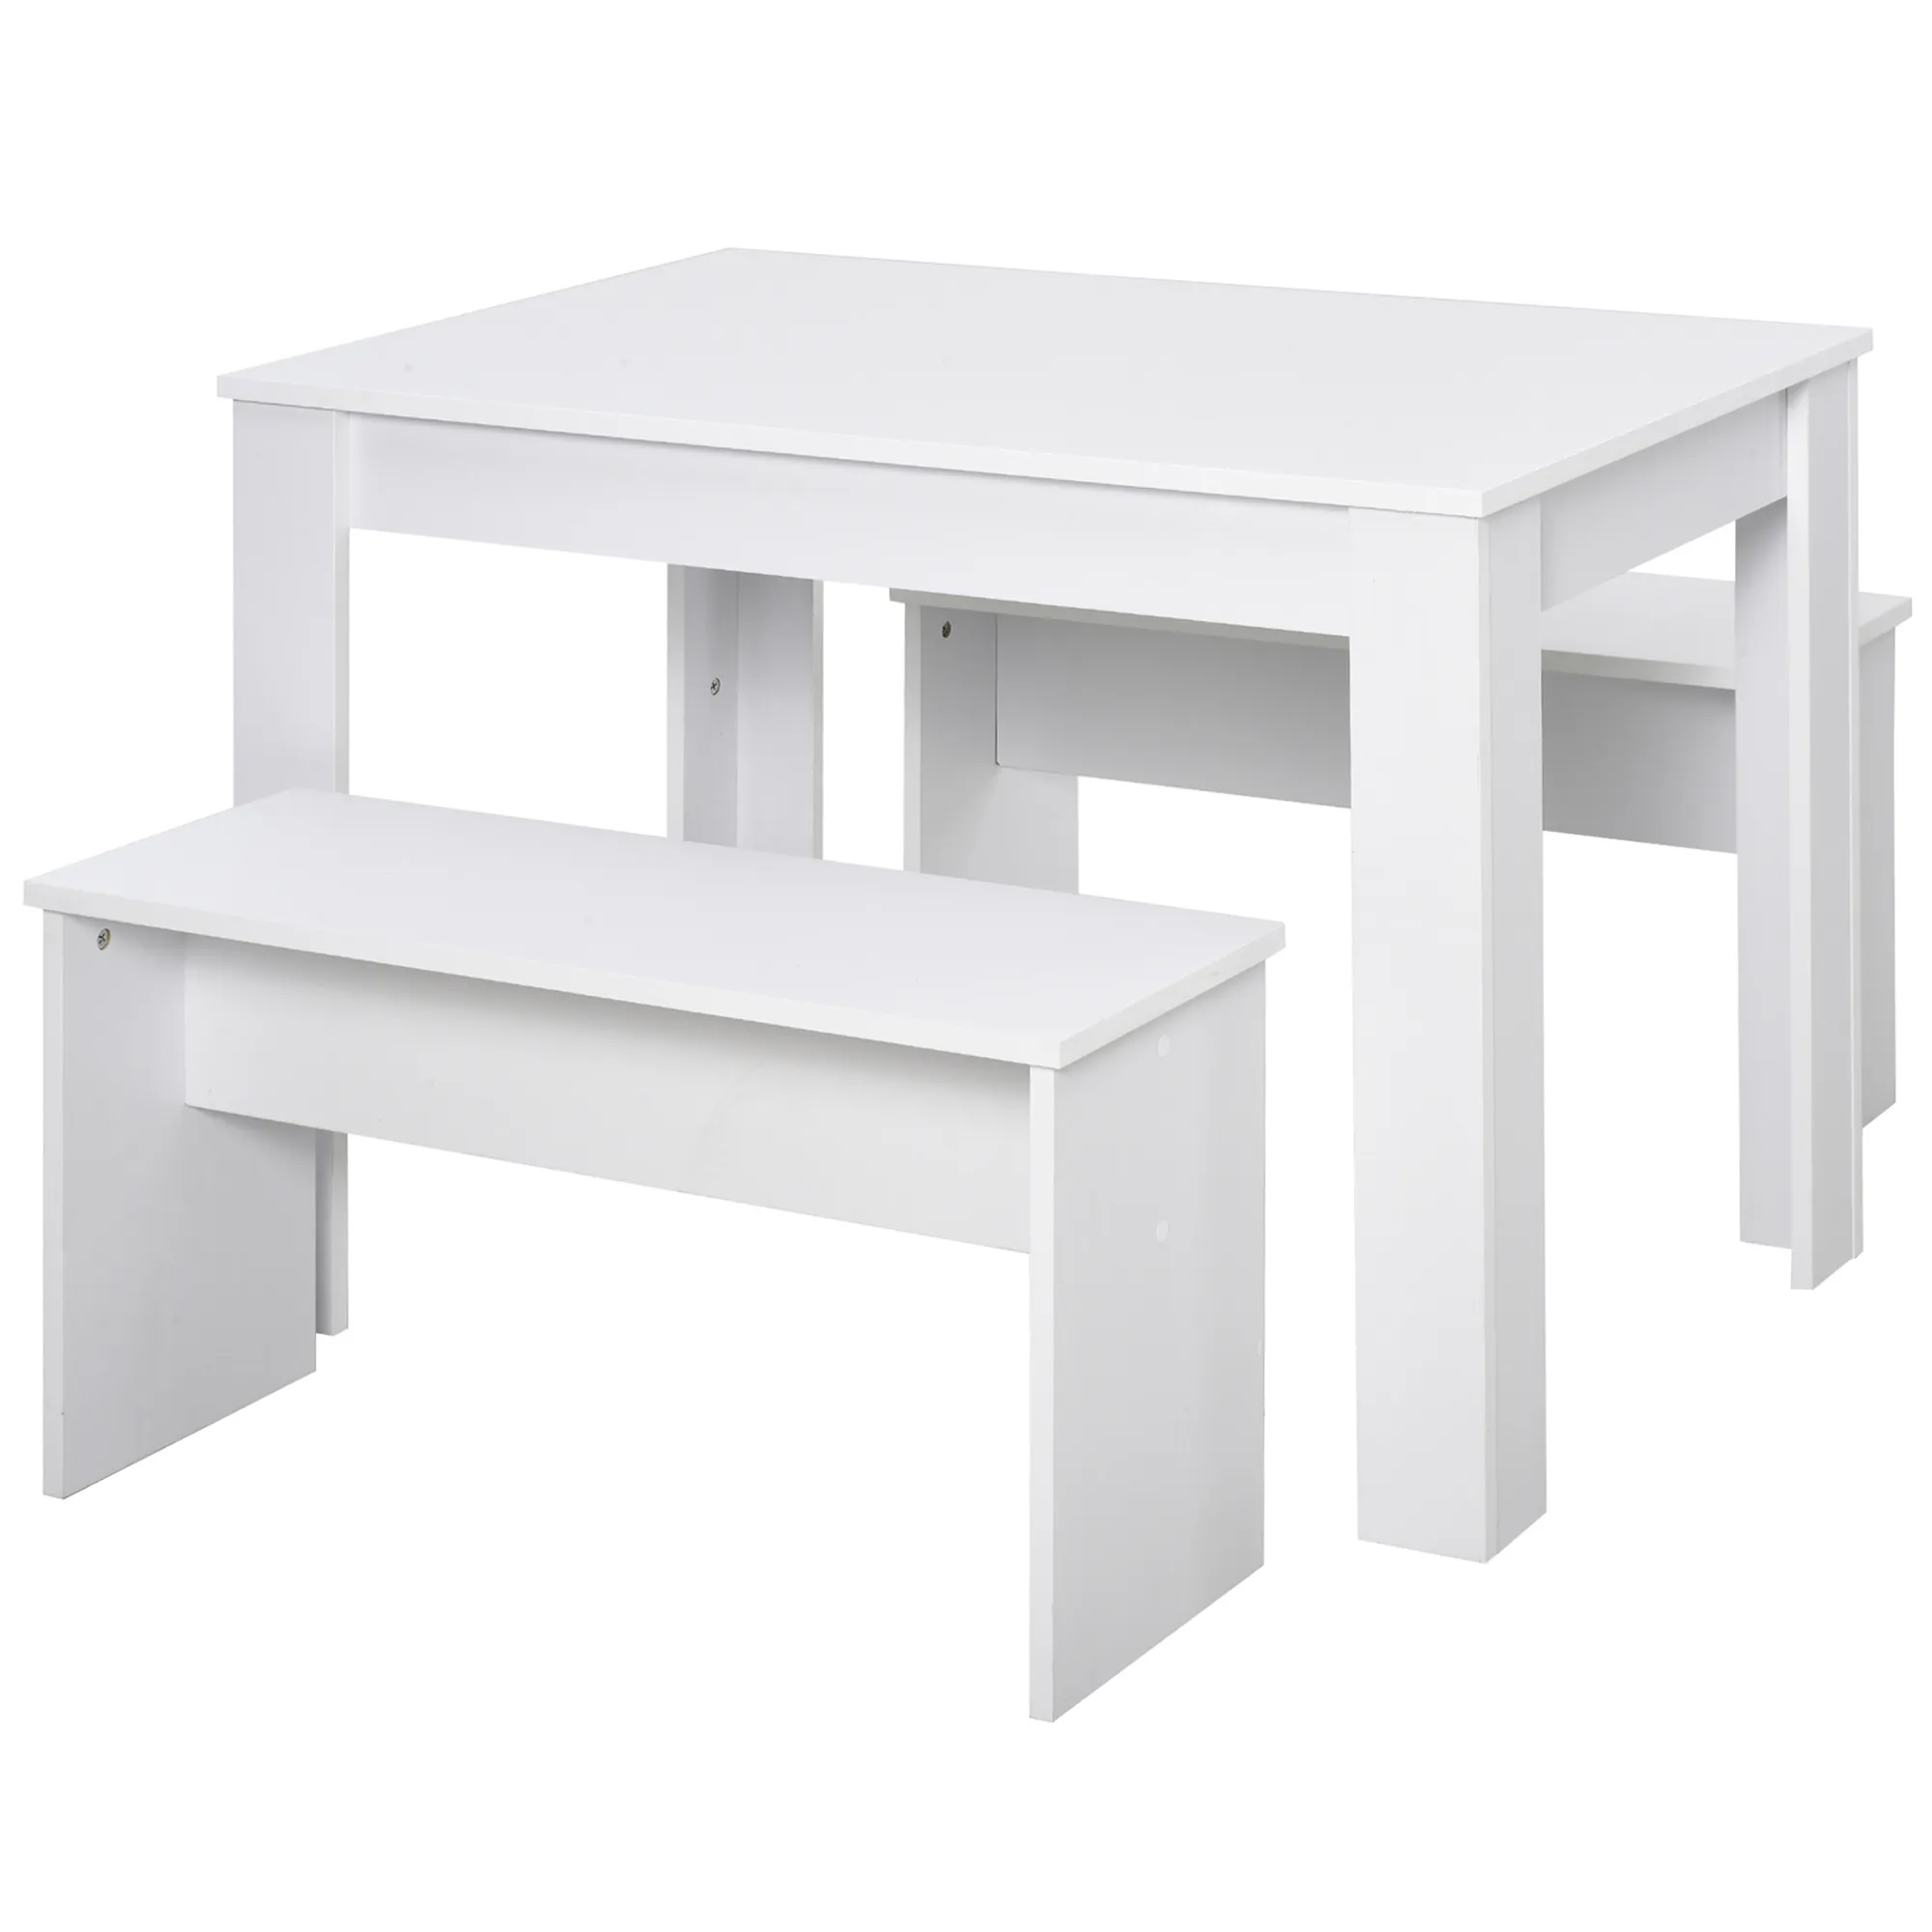  Set da Pranzo Tavolino con 2 Panche, in Stile Moderno, Bianco, per Casa, Ristorante e Caffetteria, 110x70x75cm